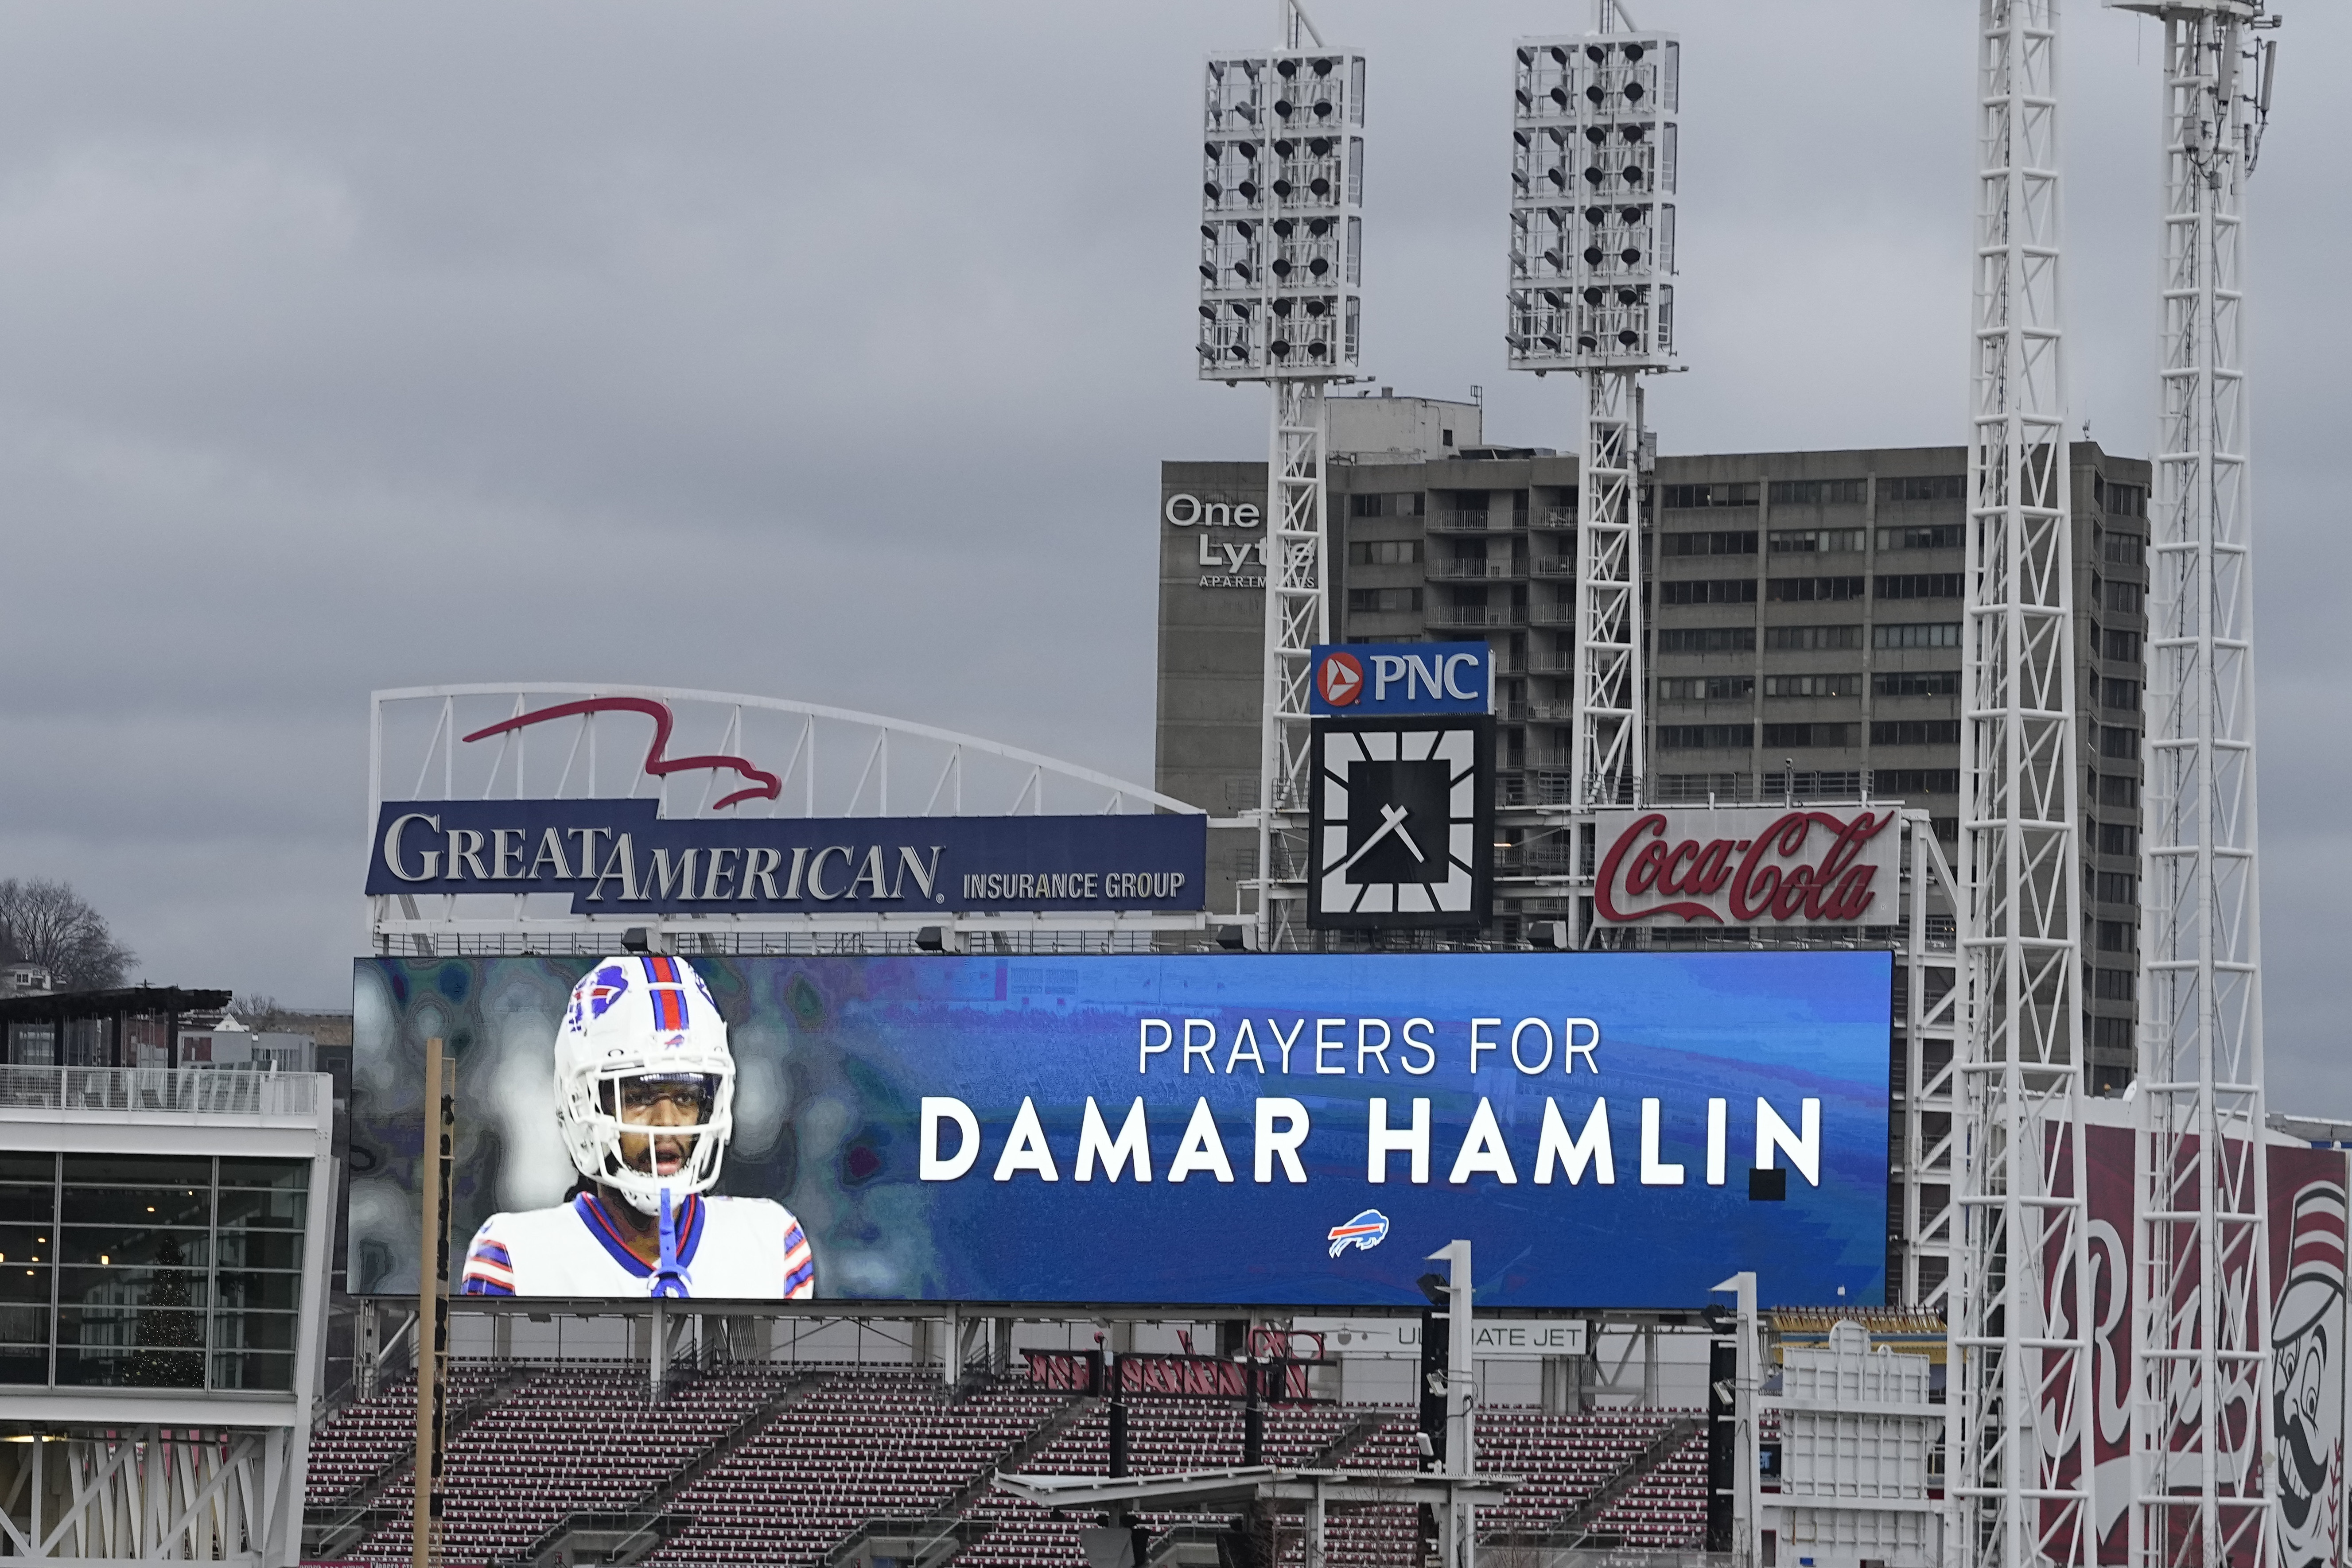 Damar Hamlin's condition shows improvement, Buffalo Bills say